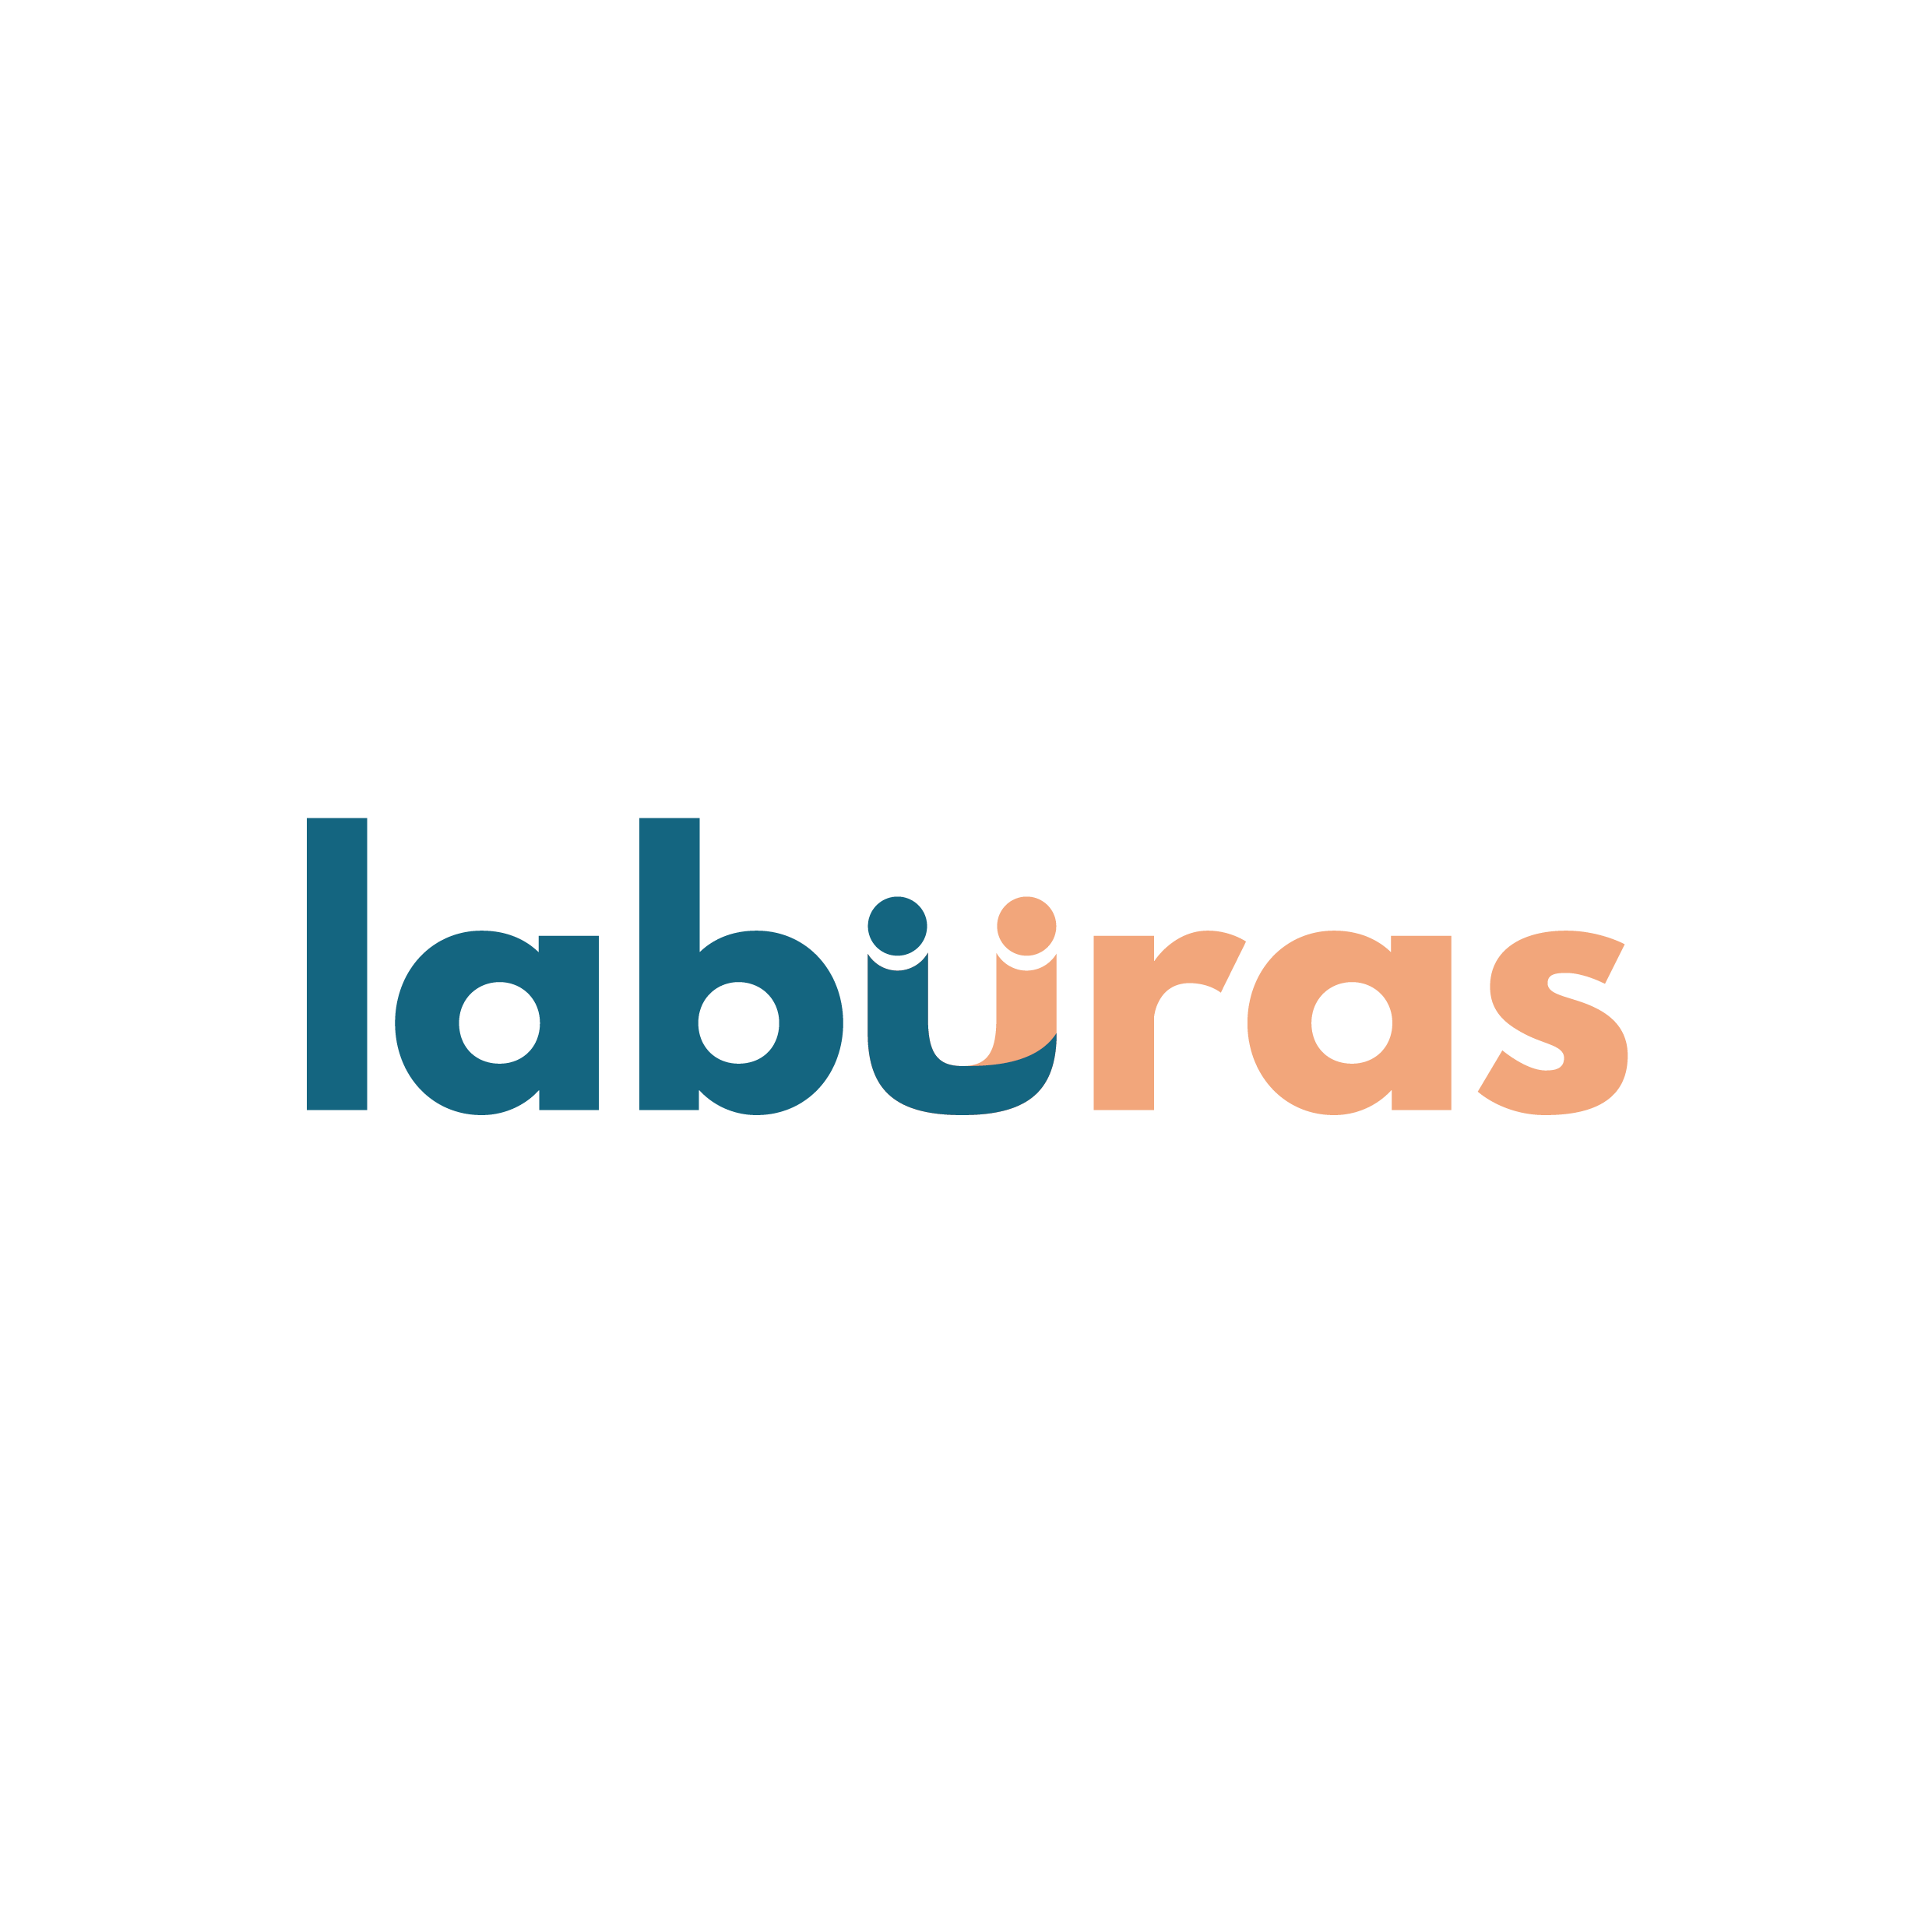 (c) Laburas.com